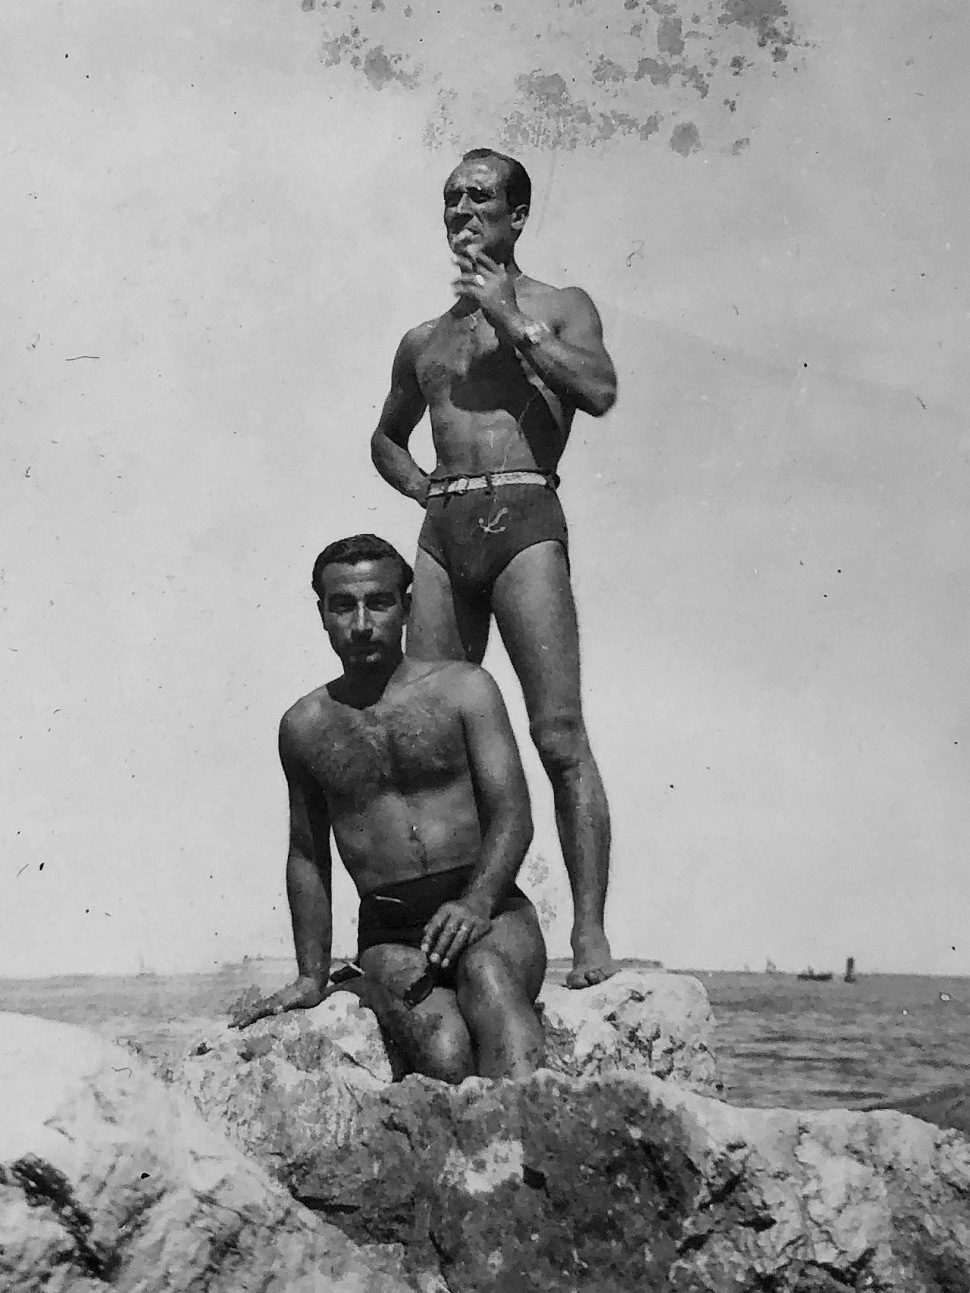 190518-pic-ferdinando-pacciolla-beach-with-friend